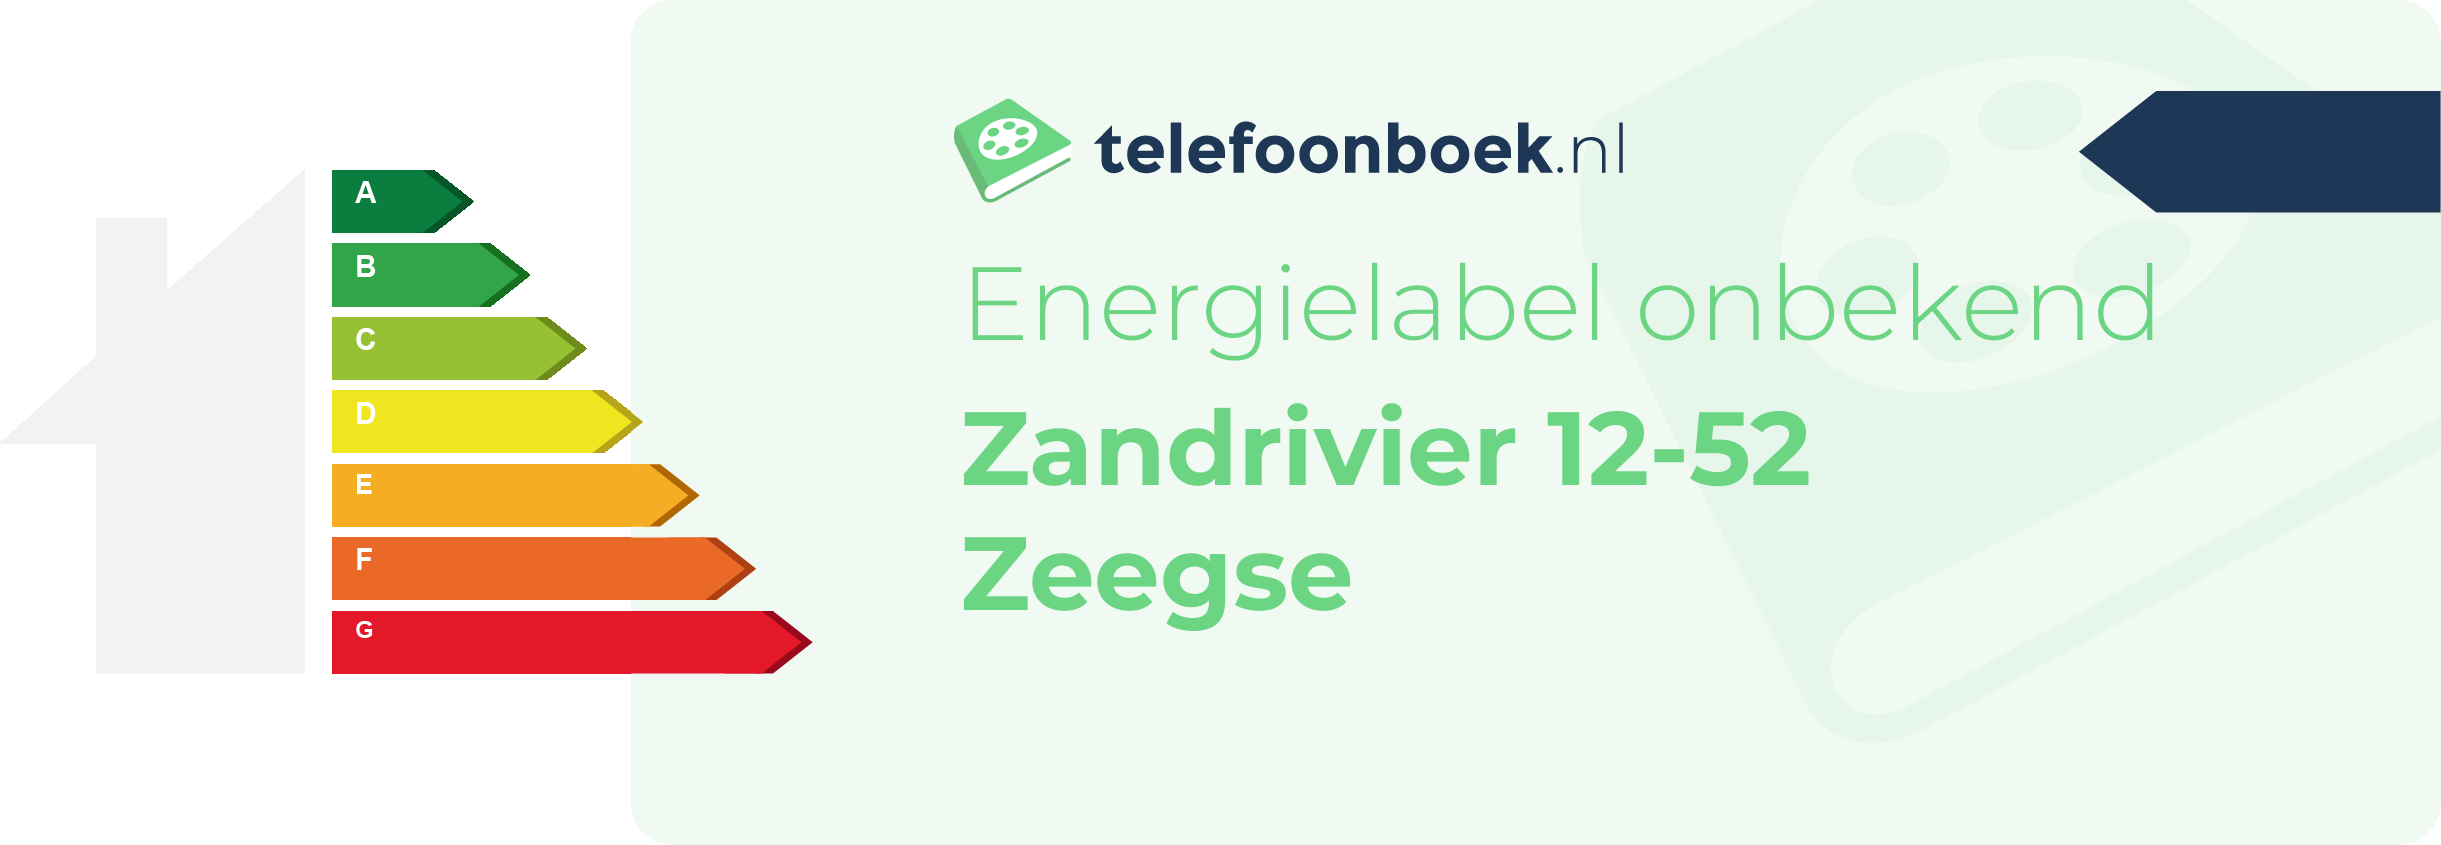 Energielabel Zandrivier 12-52 Zeegse